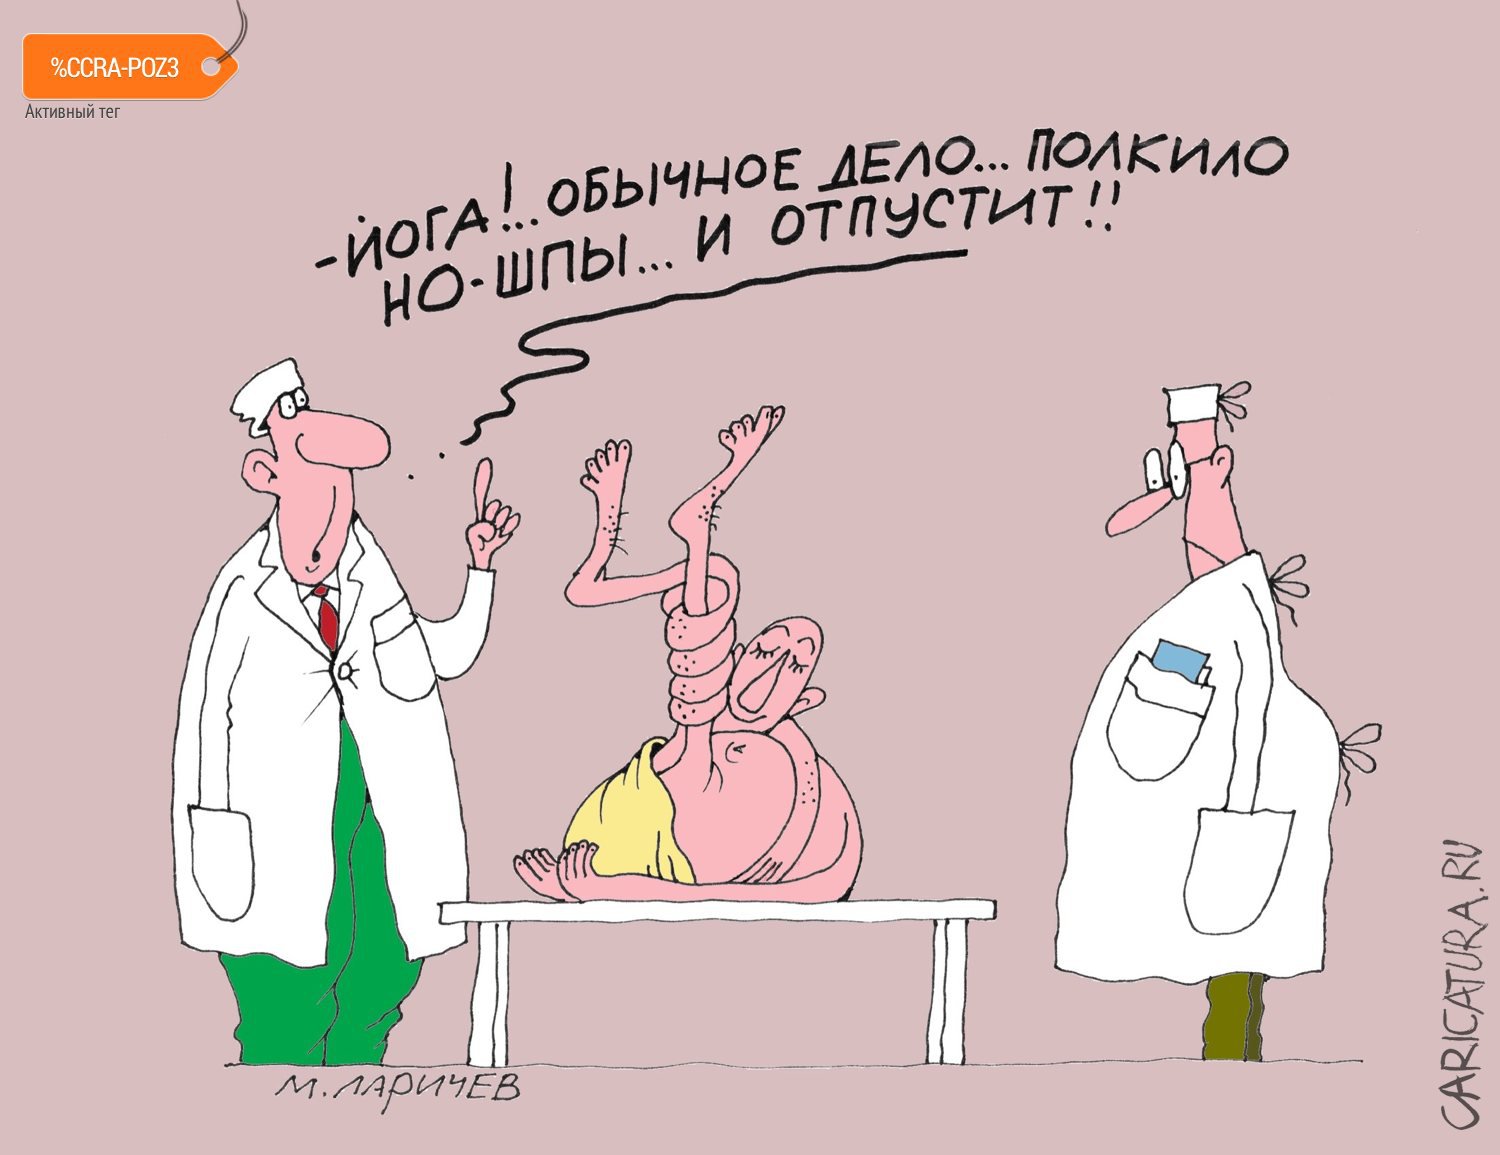 Карикатура "Но-шпа", Михаил Ларичев